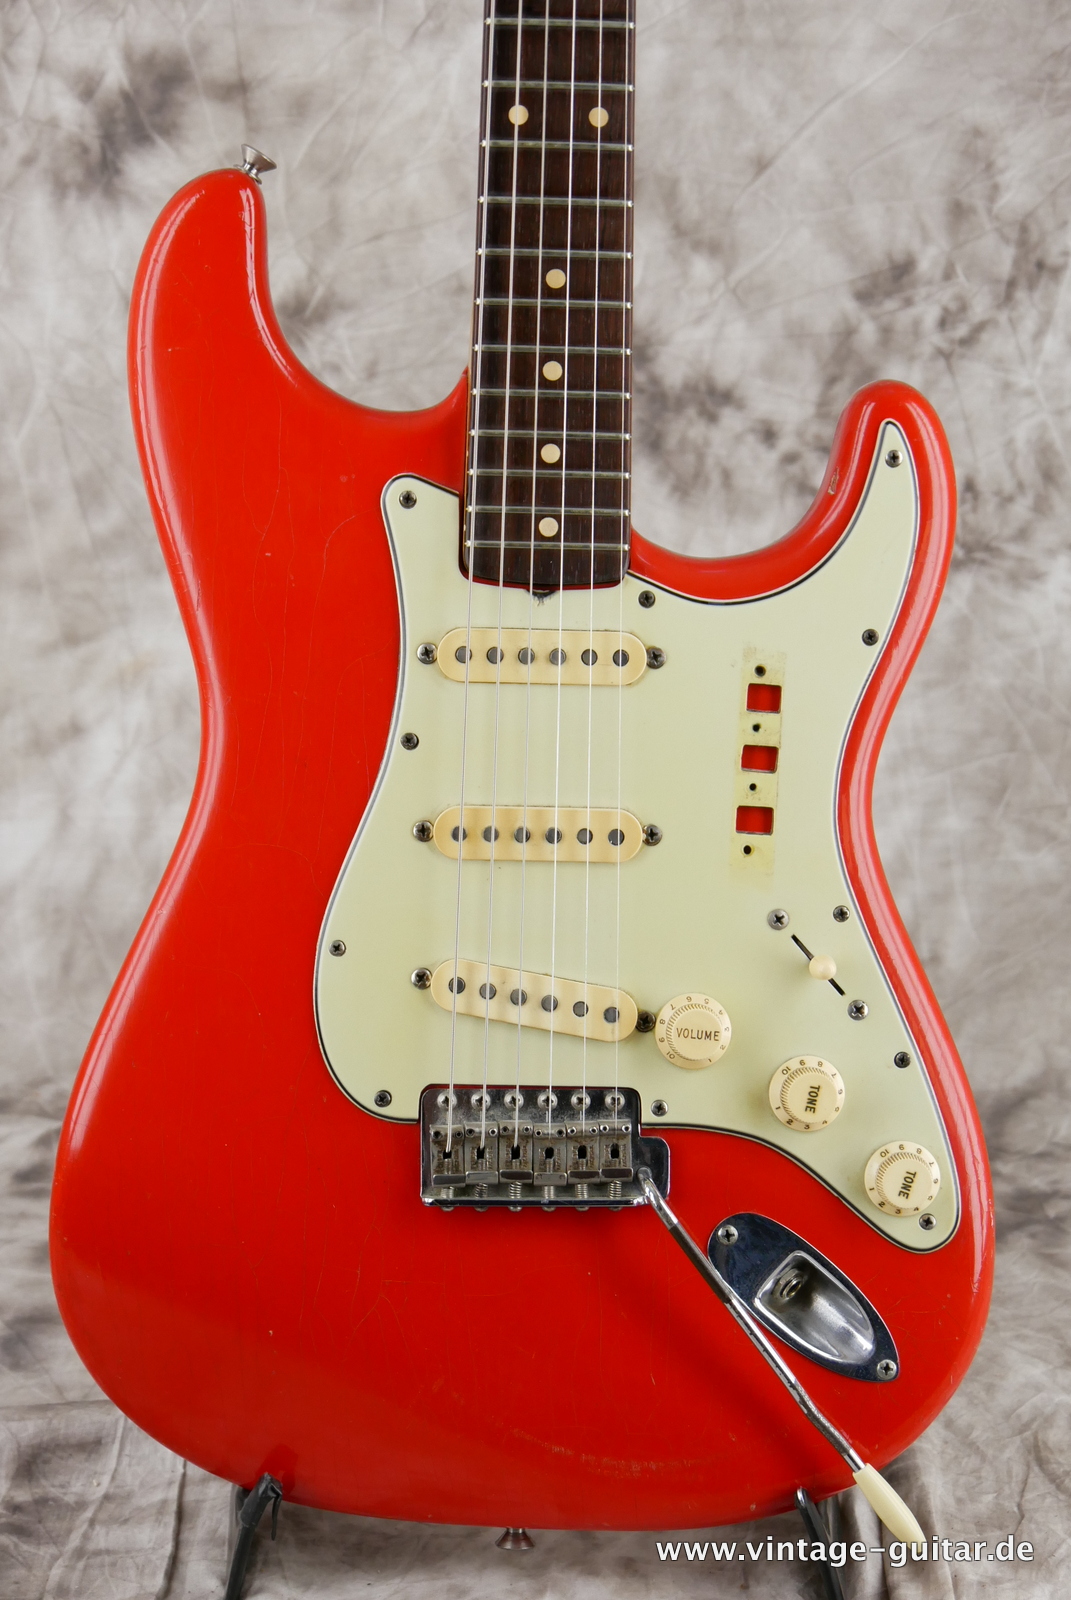 img/vintage/5074/Fender_Stratocaster_fiesta_red_refinished_1961-003.JPG